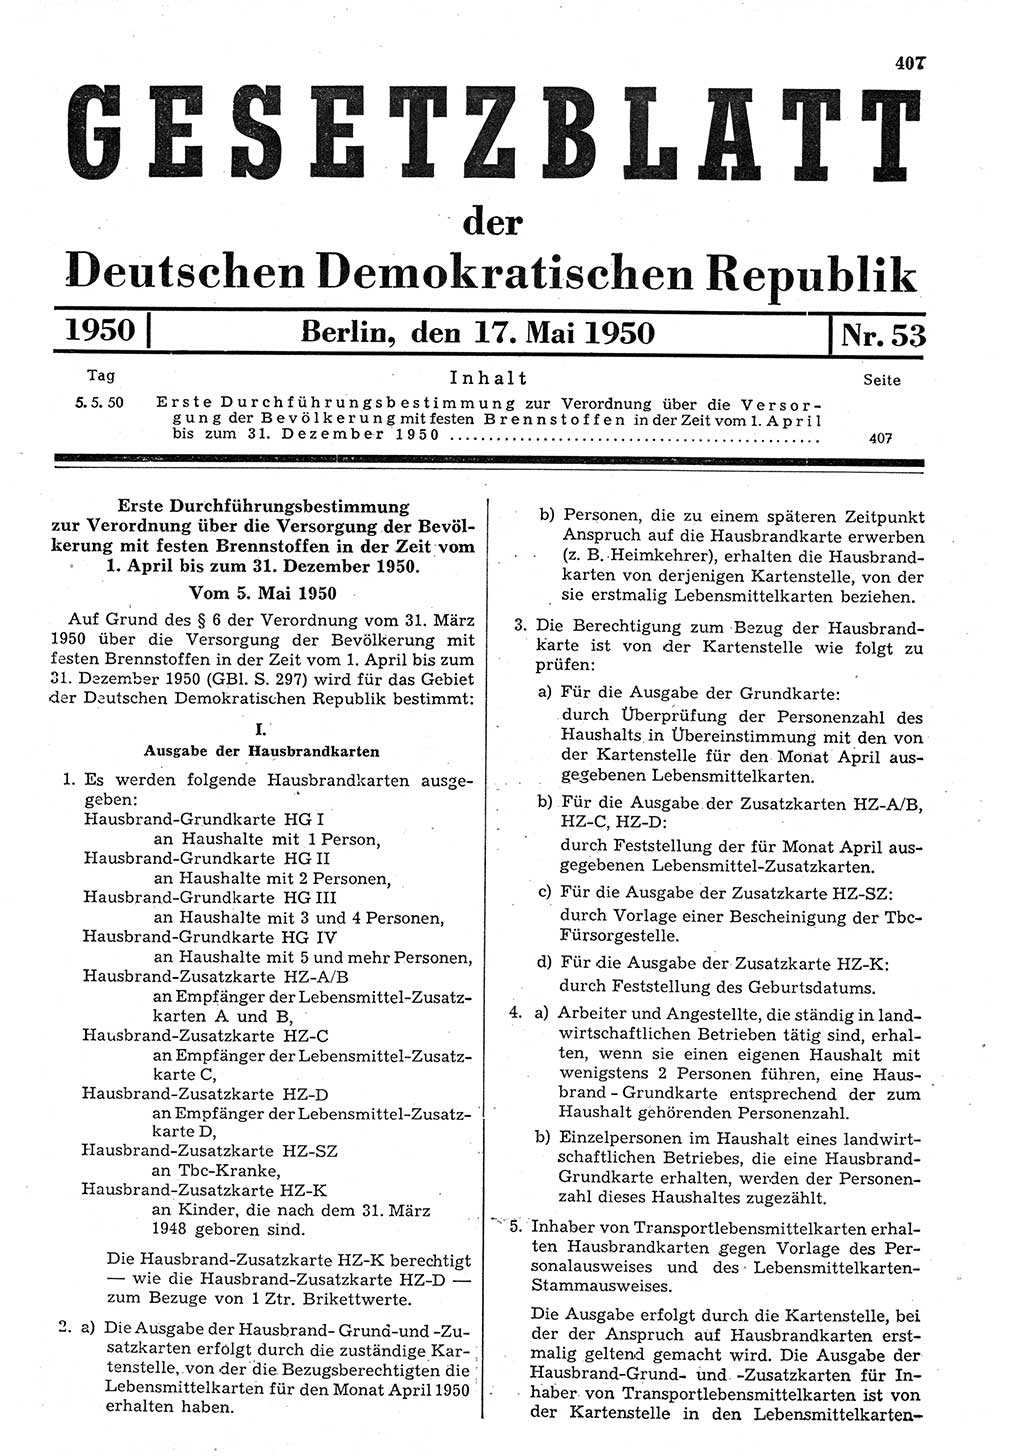 Gesetzblatt (GBl.) der Deutschen Demokratischen Republik (DDR) 1950, Seite 407 (GBl. DDR 1950, S. 407)